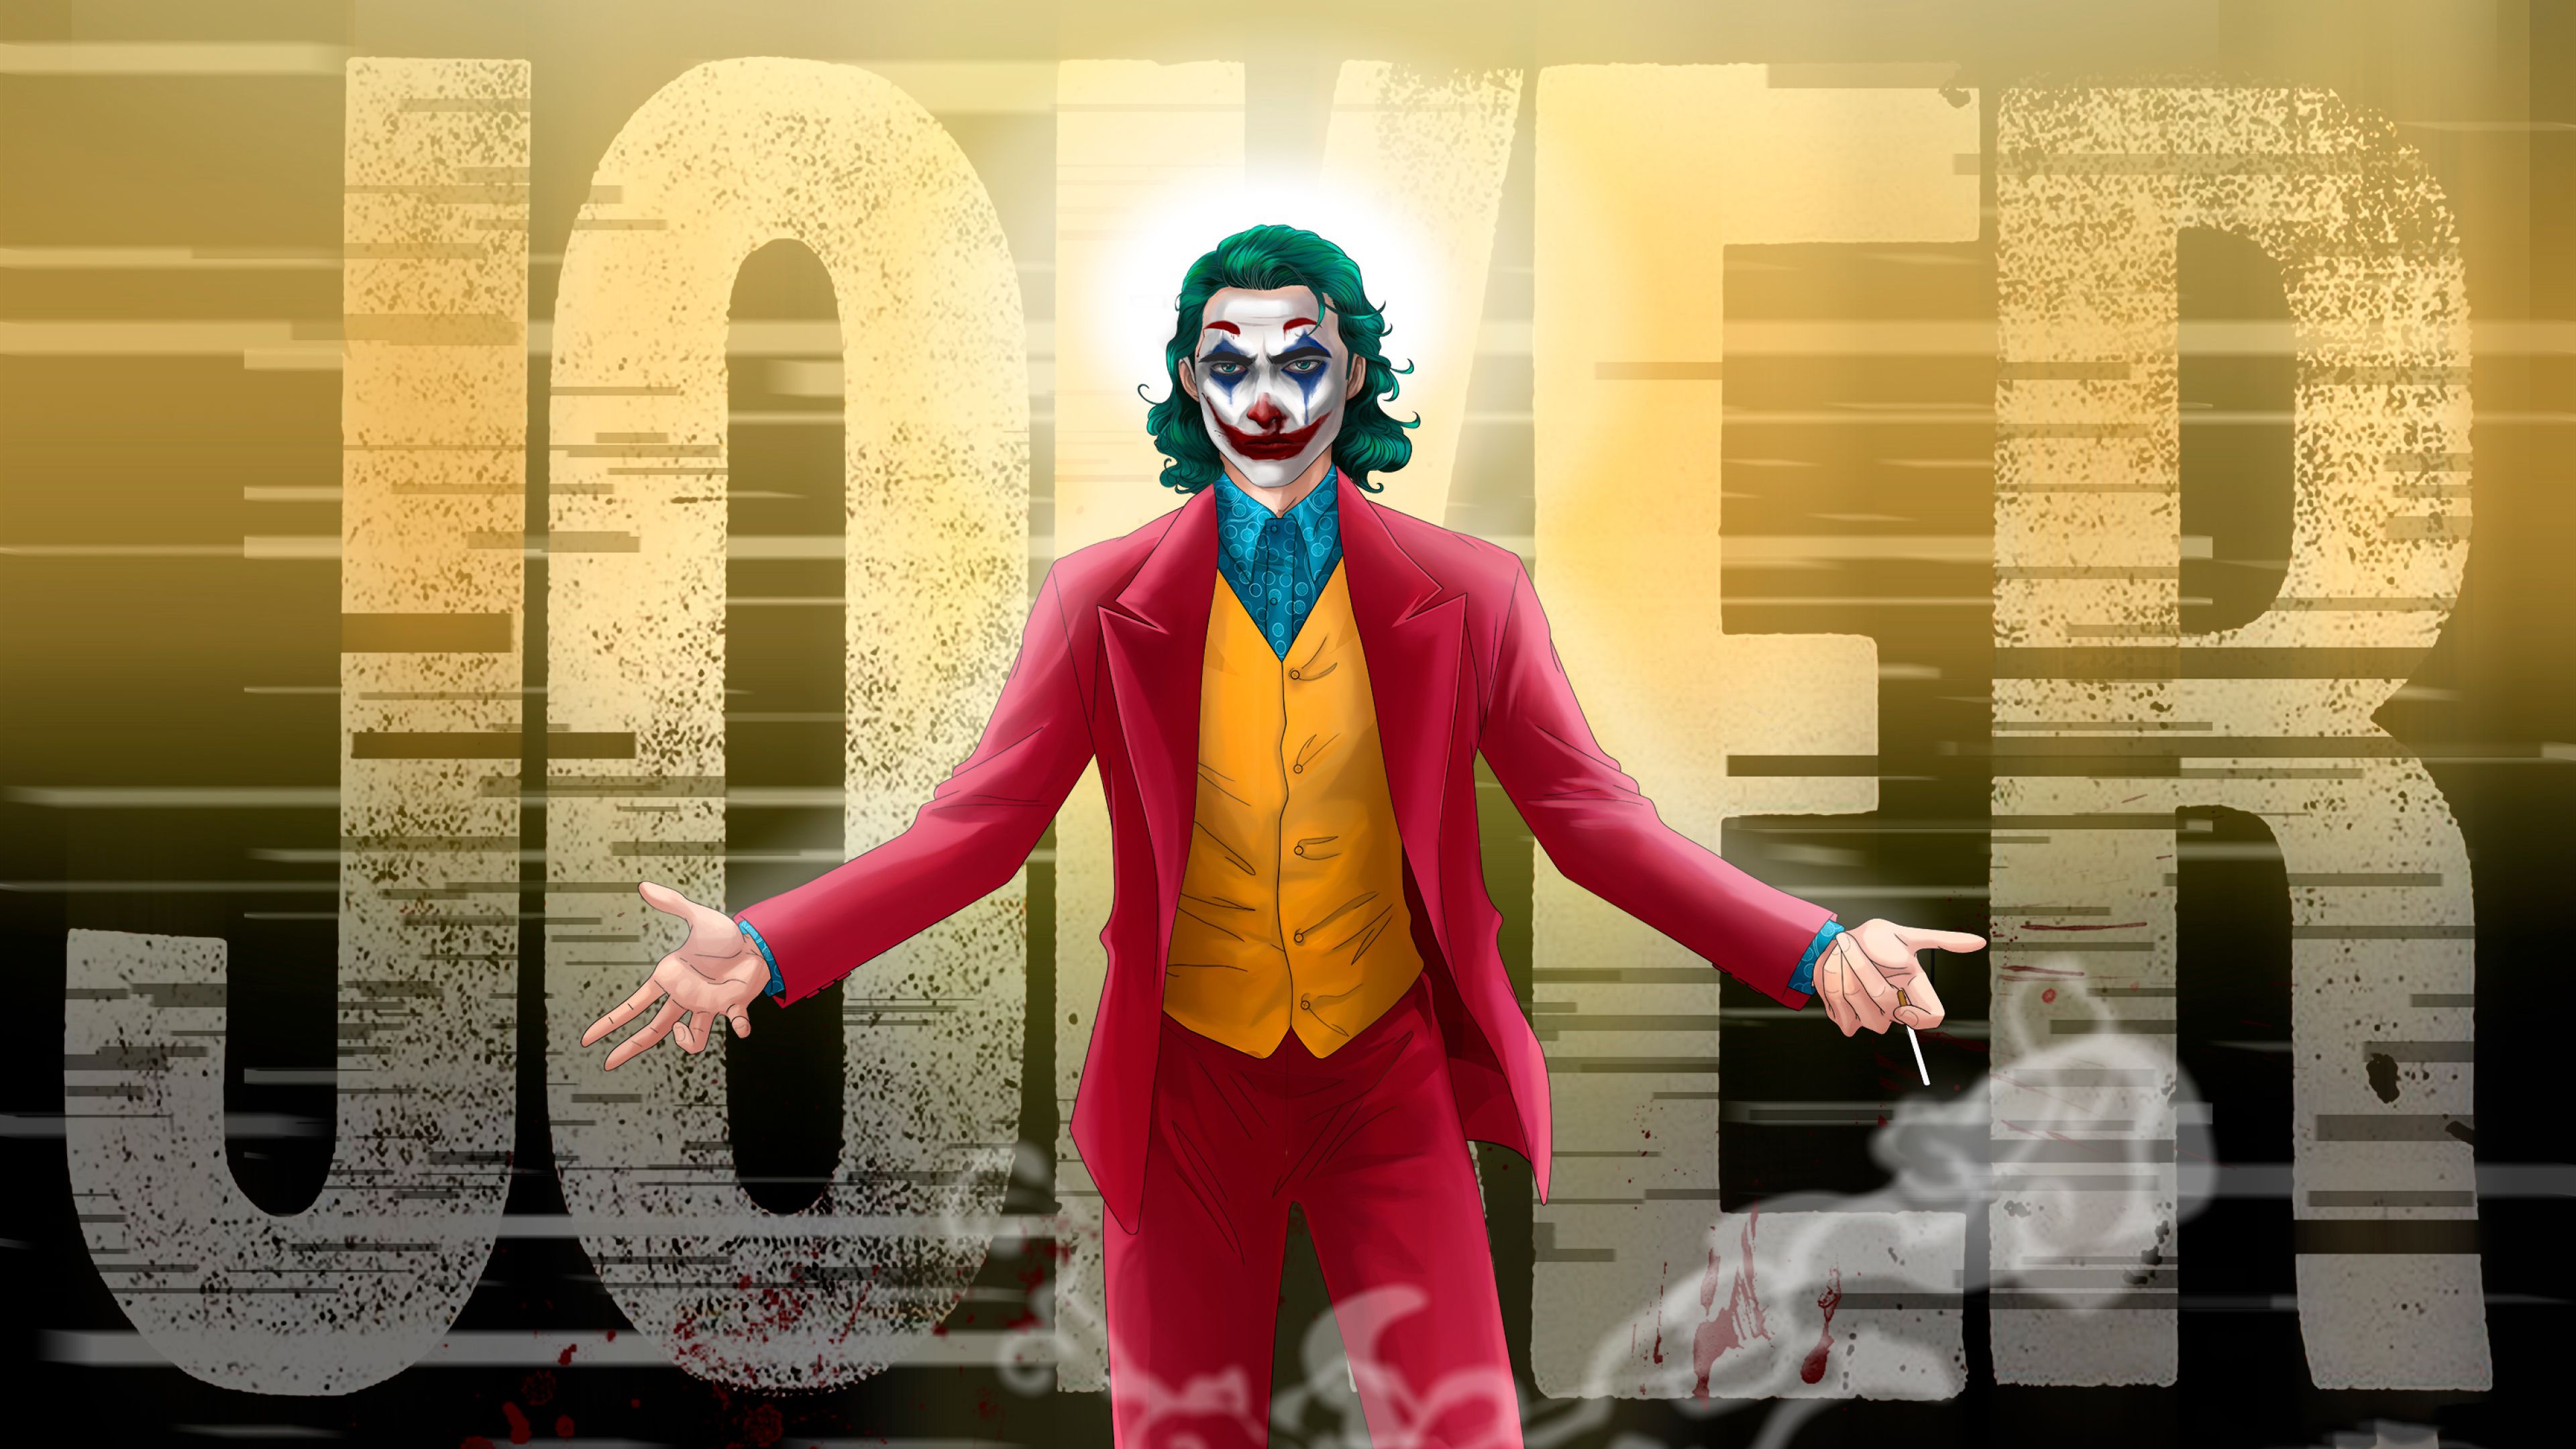 Joker 4K Art 4K Wallpaper, HD Artist 4K Wallpaper, Image, Photo and Background